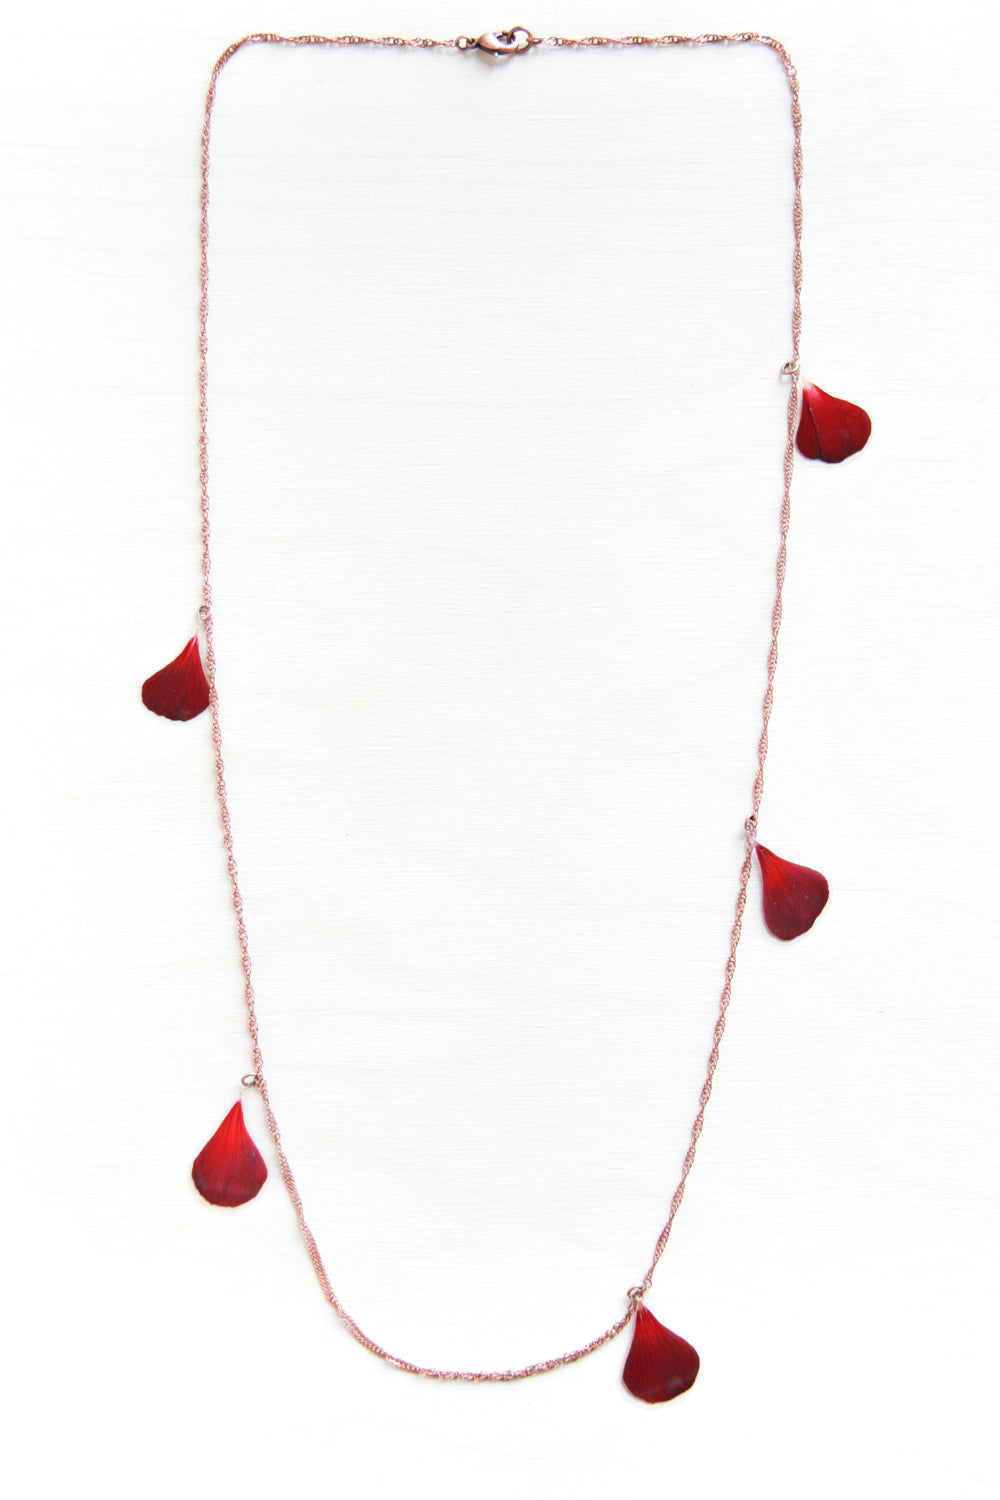 Red Geranium Pressed Petal Confetti Necklace